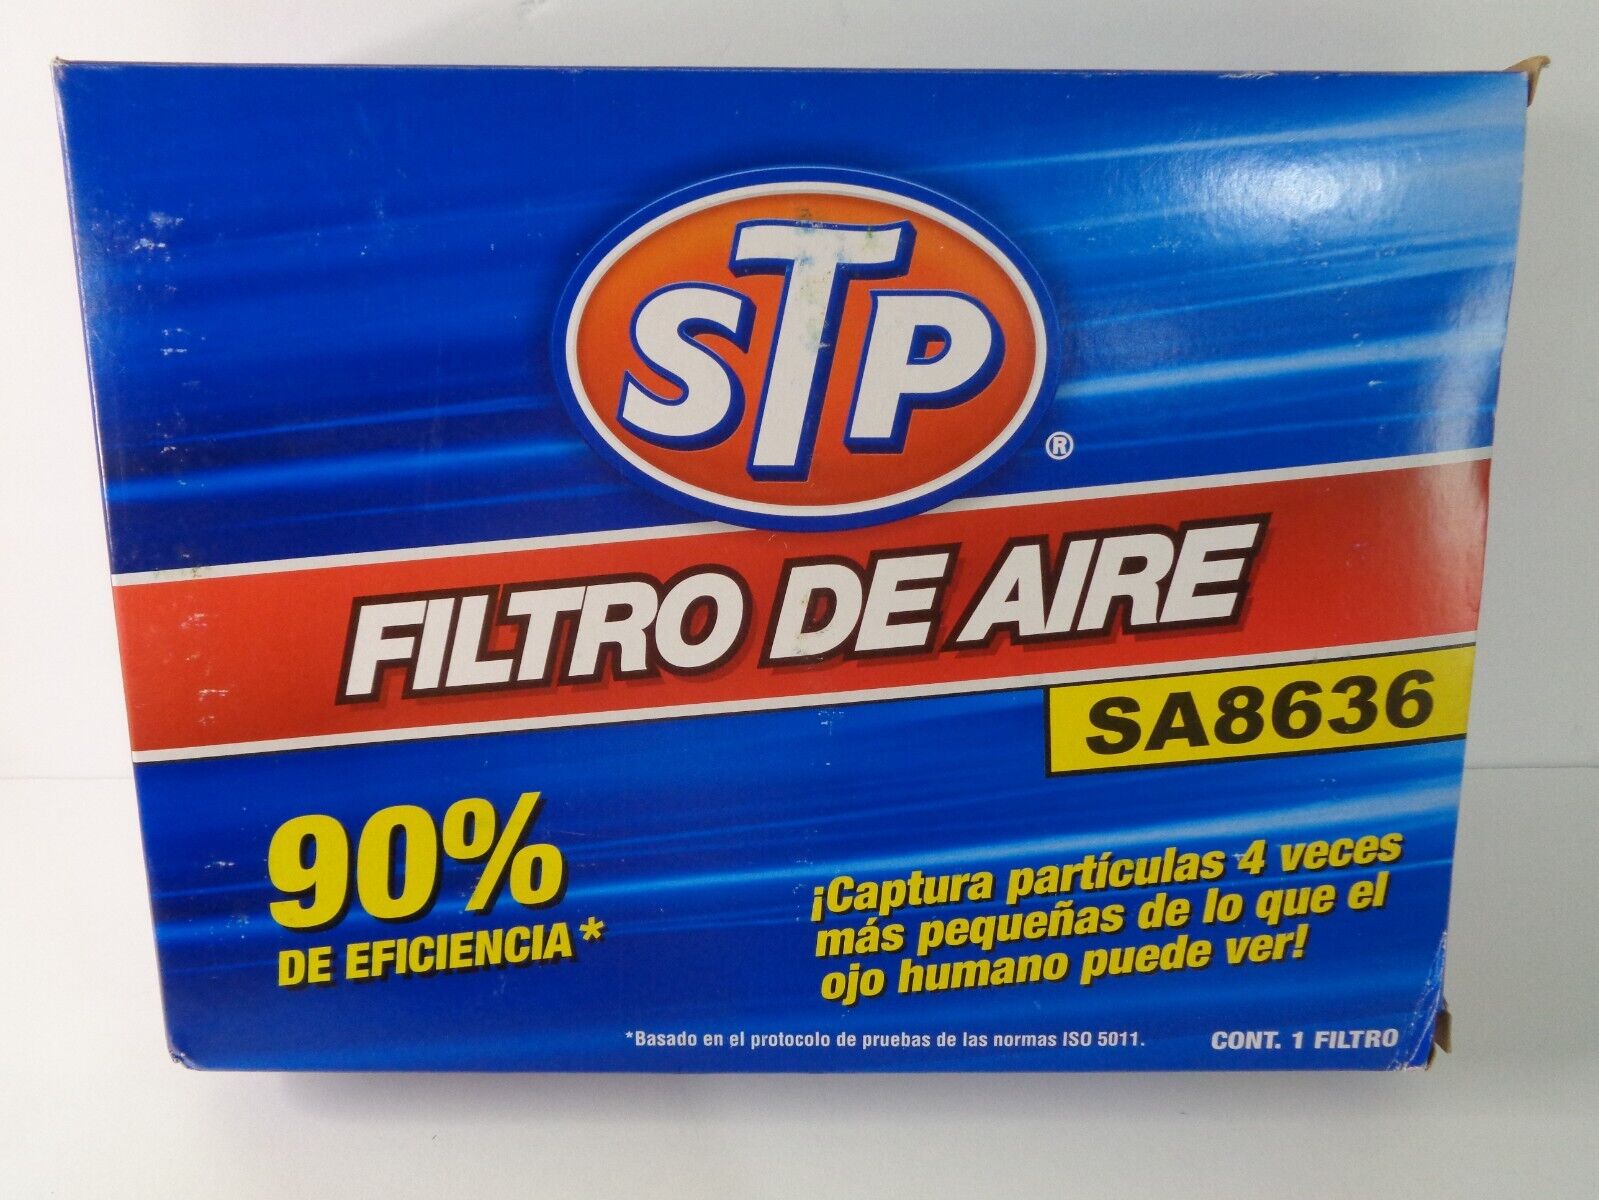 STP air filter SA8636